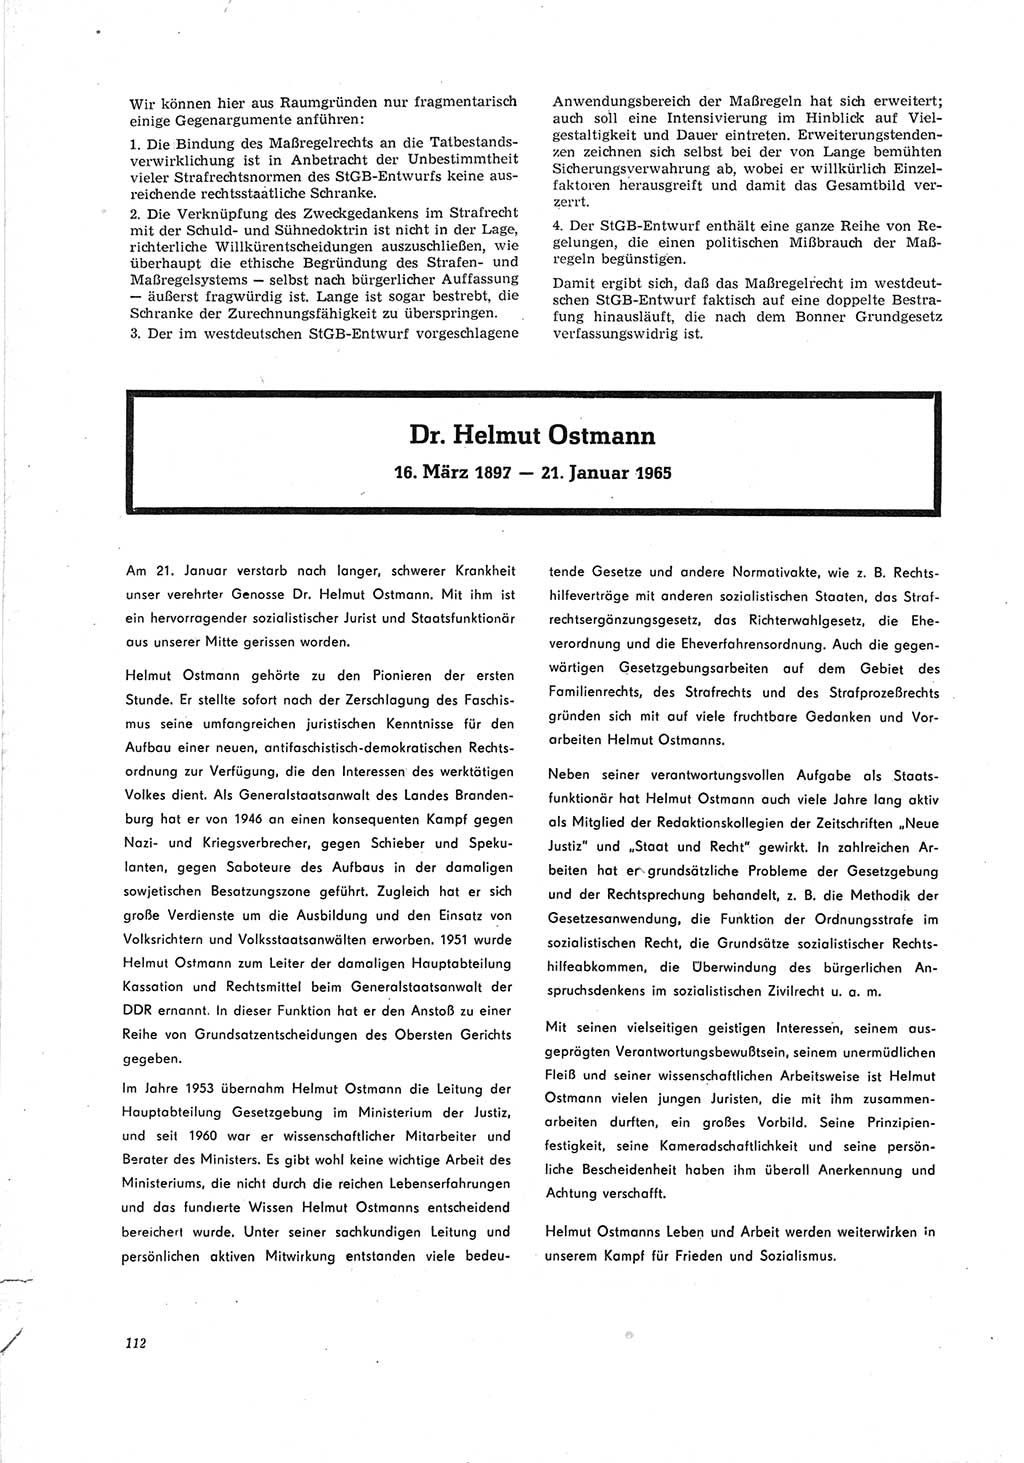 Neue Justiz (NJ), Zeitschrift für Recht und Rechtswissenschaft [Deutsche Demokratische Republik (DDR)], 19. Jahrgang 1965, Seite 112 (NJ DDR 1965, S. 112)